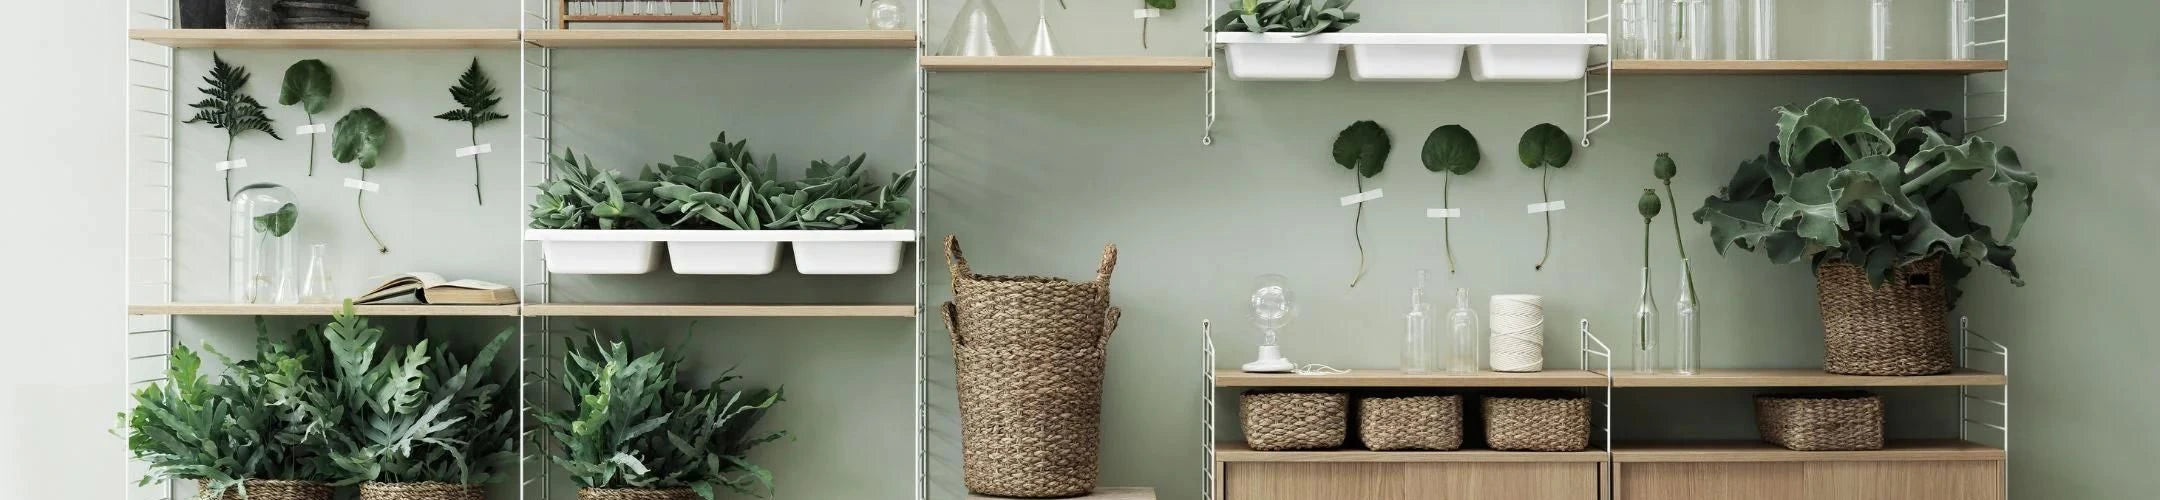 Hand-Woven Metal Shelf- Waterproof Rope — Innerspacism